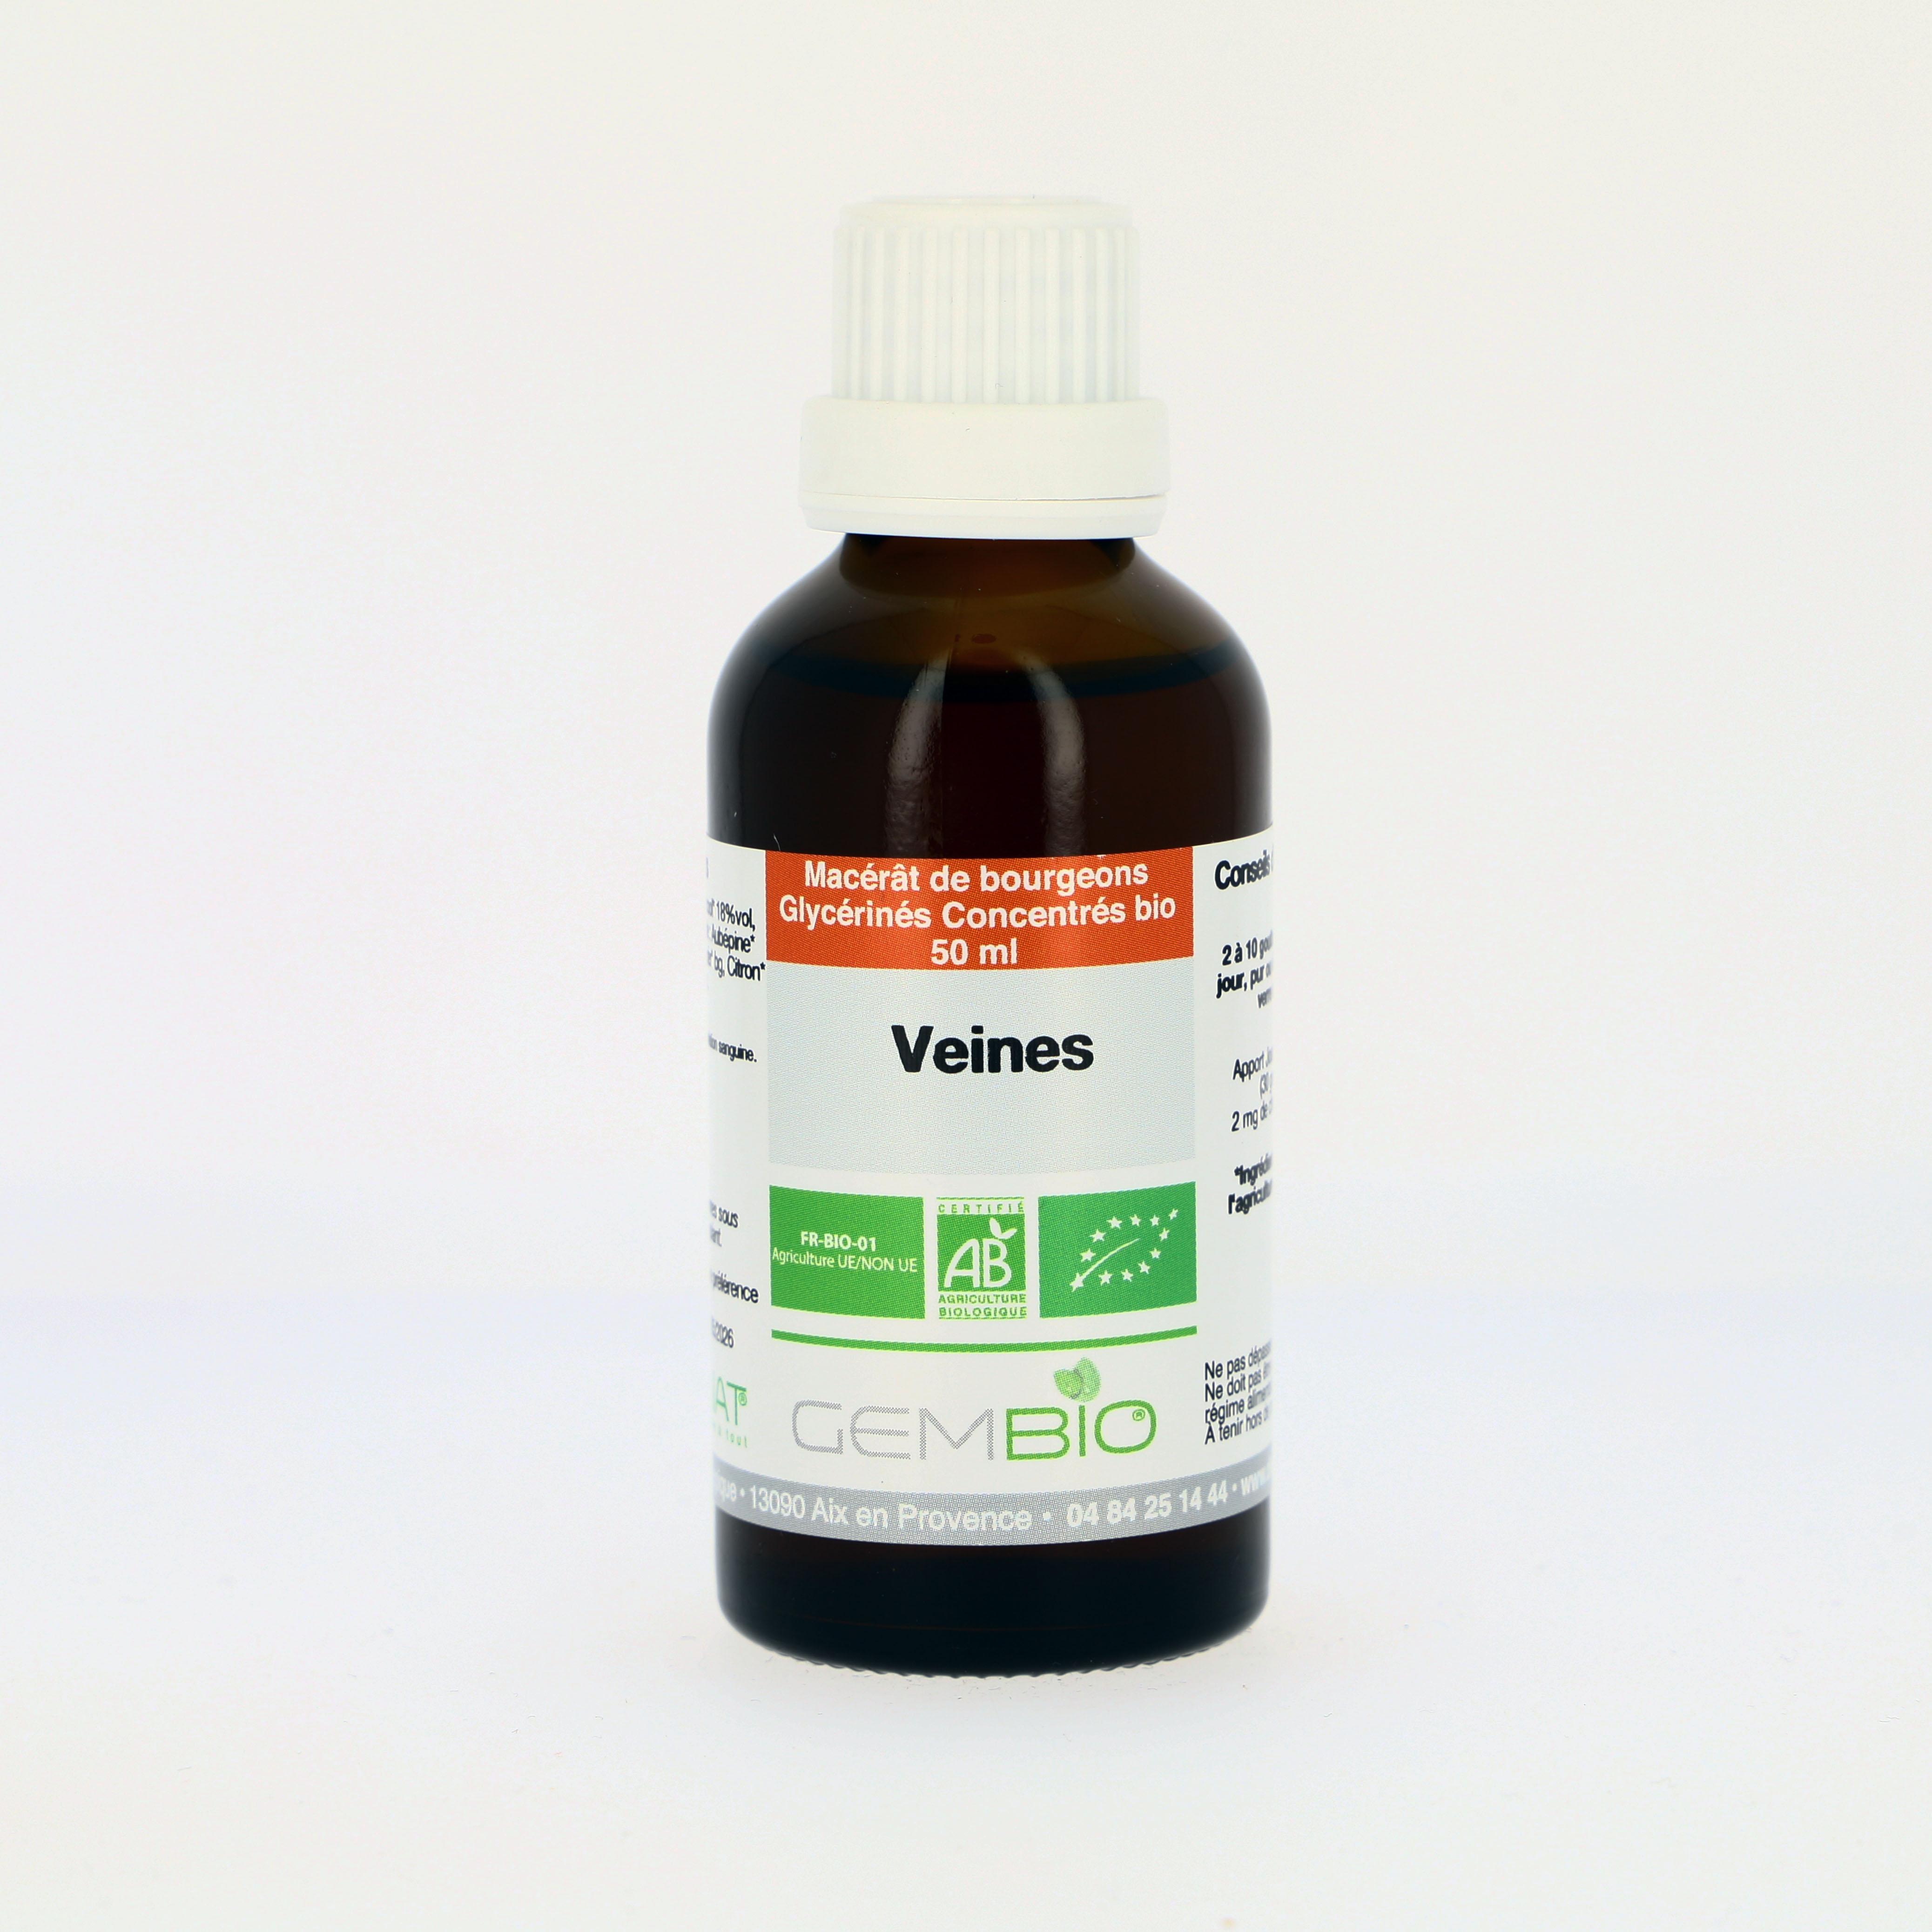 Veines-Circulation Bio Complexe extrait de bourgeons frais - 50ml Macérât concentré